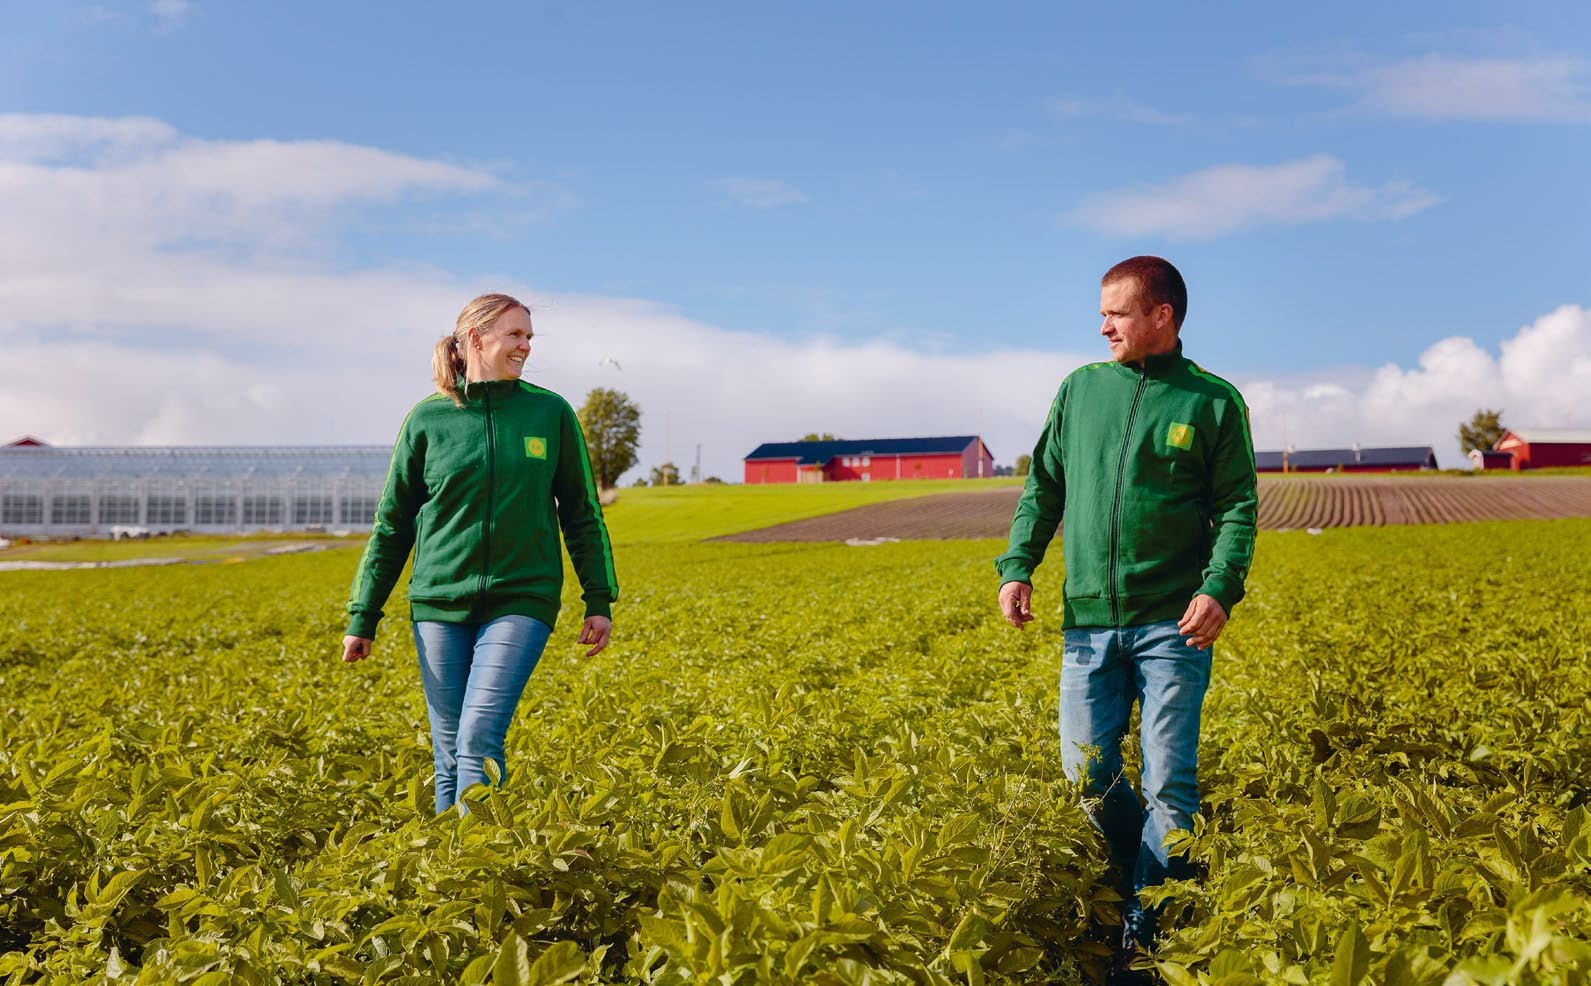 1 Bondens partner Felleskjøpet skal sikre økt bondenytte på alle gårder i Norge. Som bondens partner går vi sammen med bonden om å utvikle gårdsdriften.